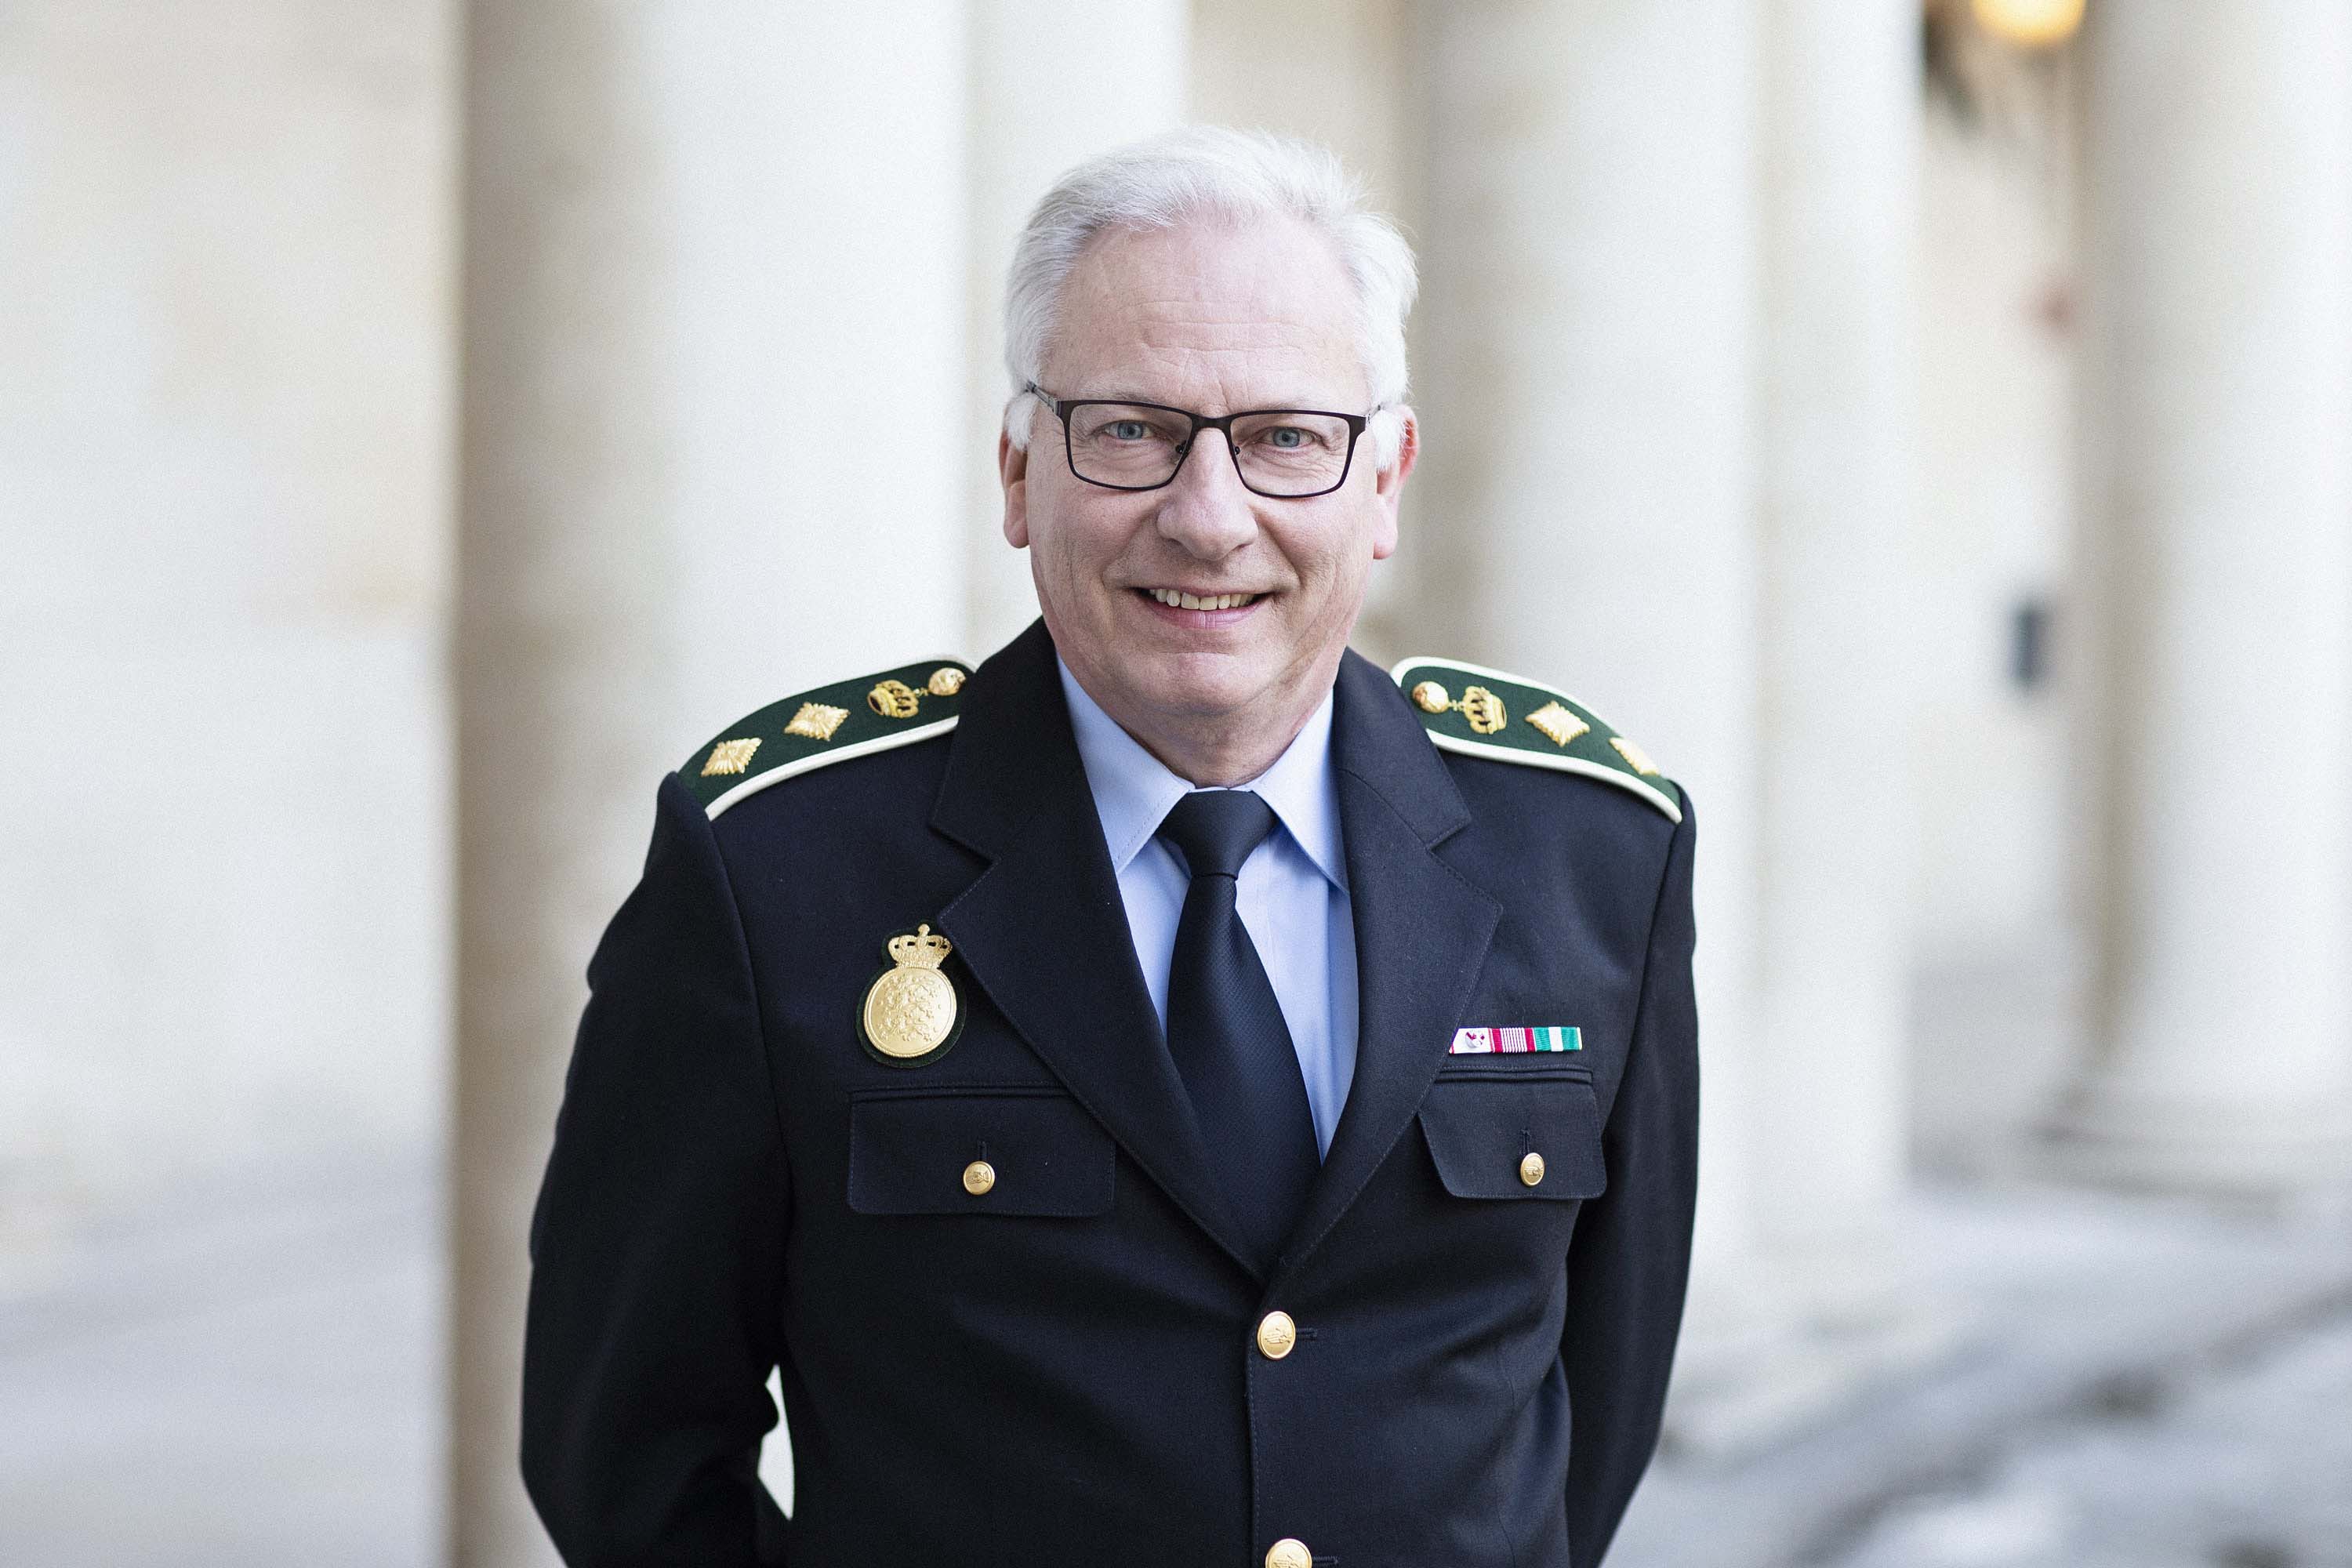 Politidirektør Jørgen Abrahamsen, Sydøstjyllands Politi